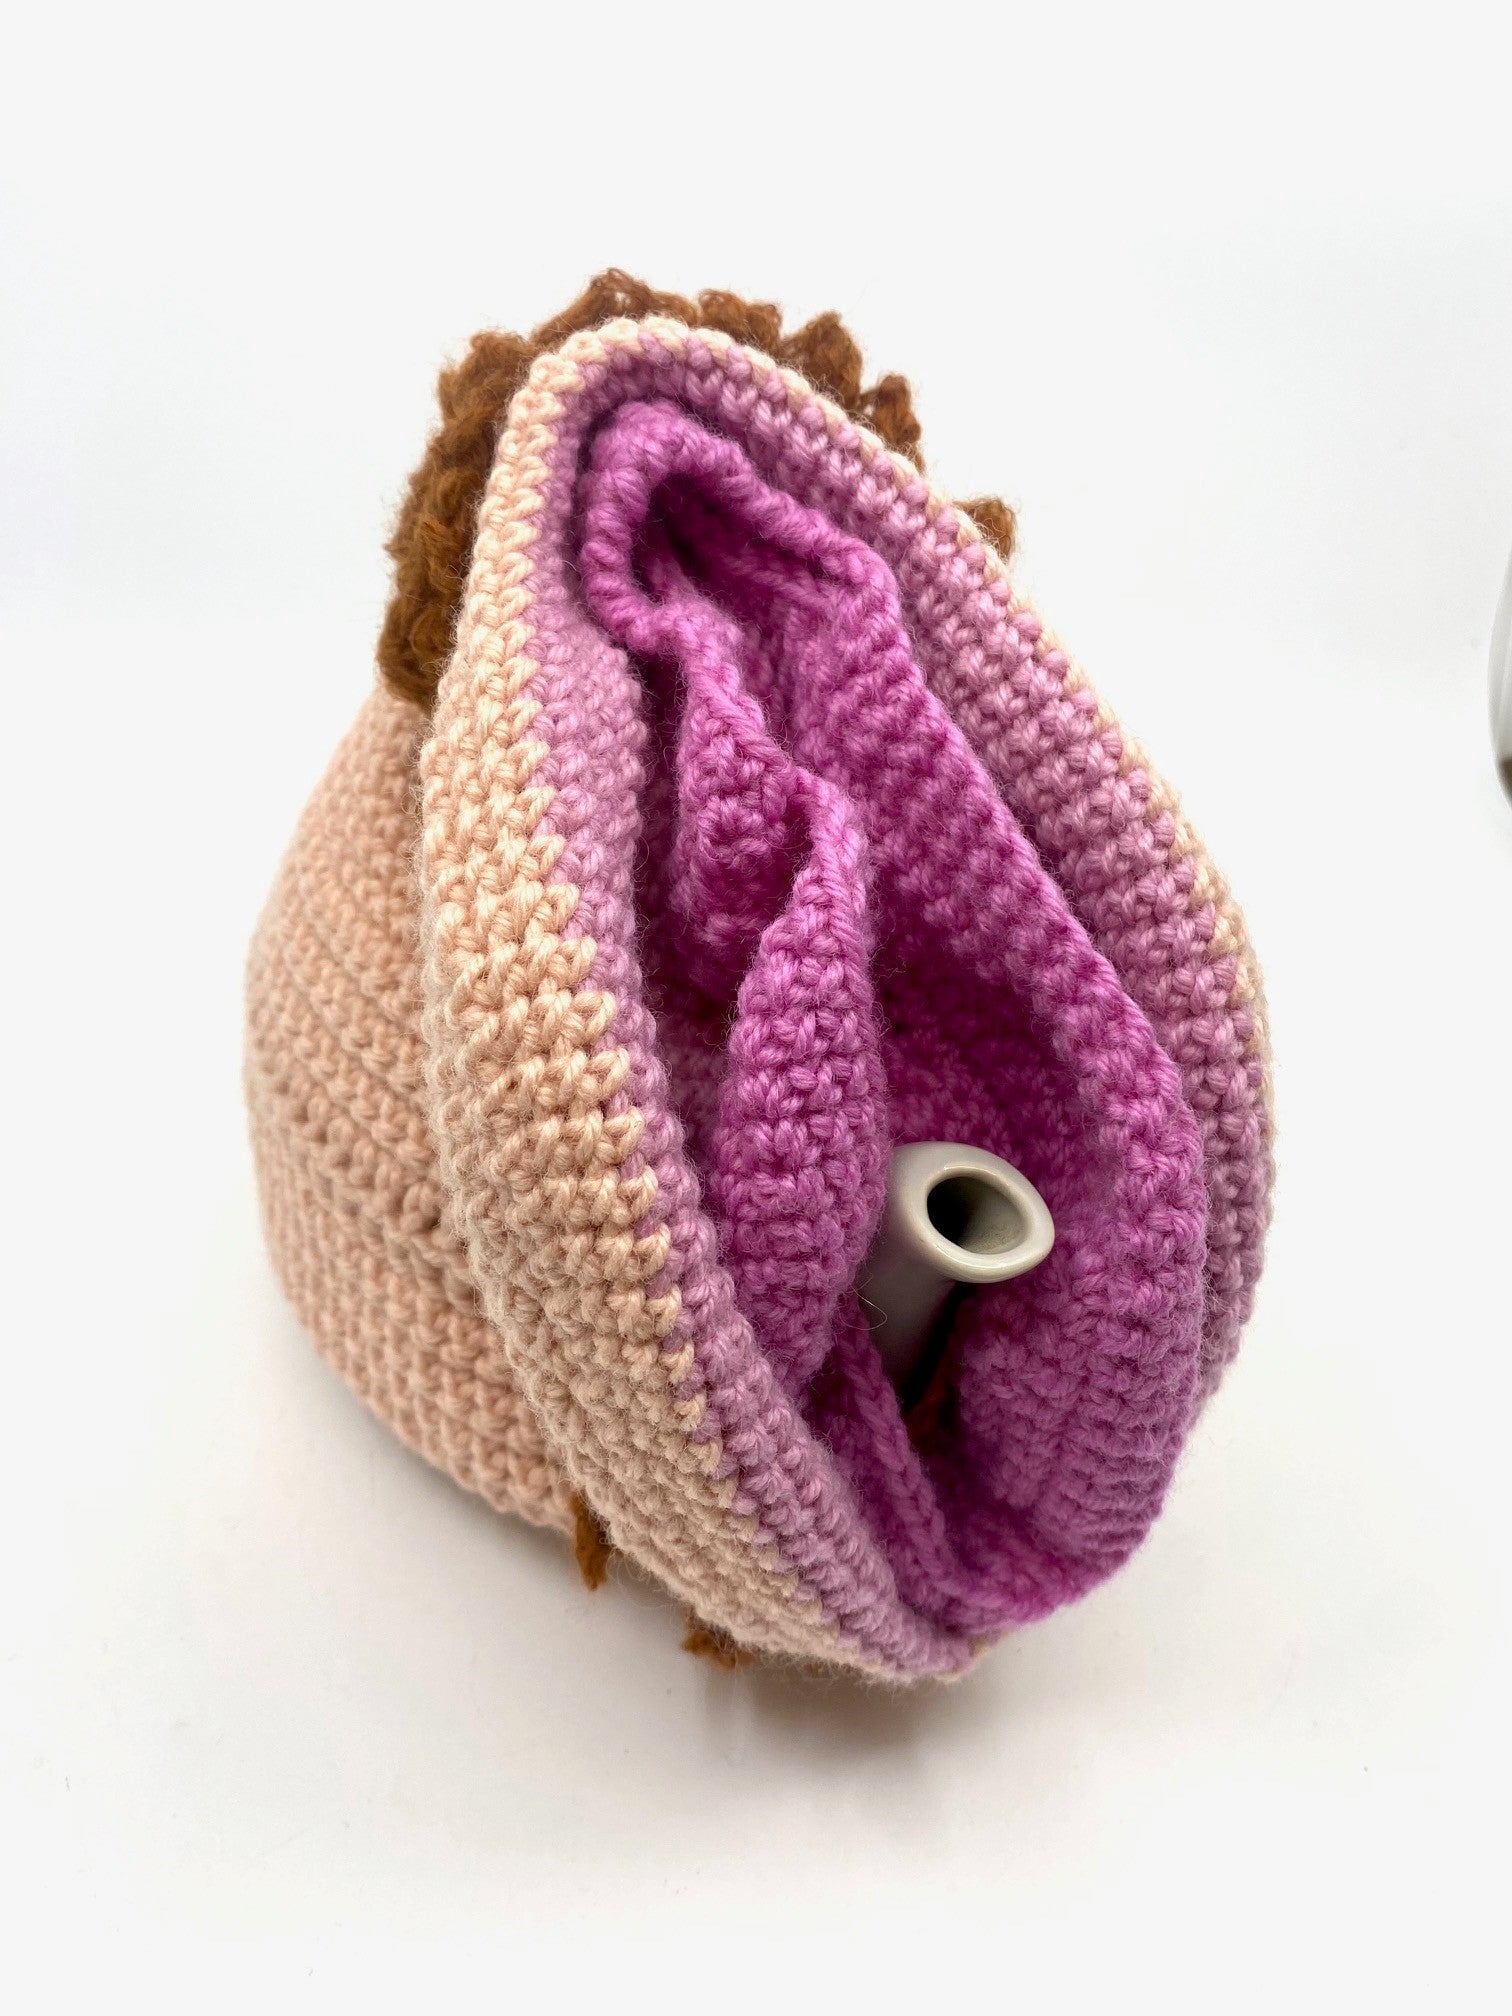 Vulva Tea Cosy Textiles & Fibre Art Lulu Geraghty 